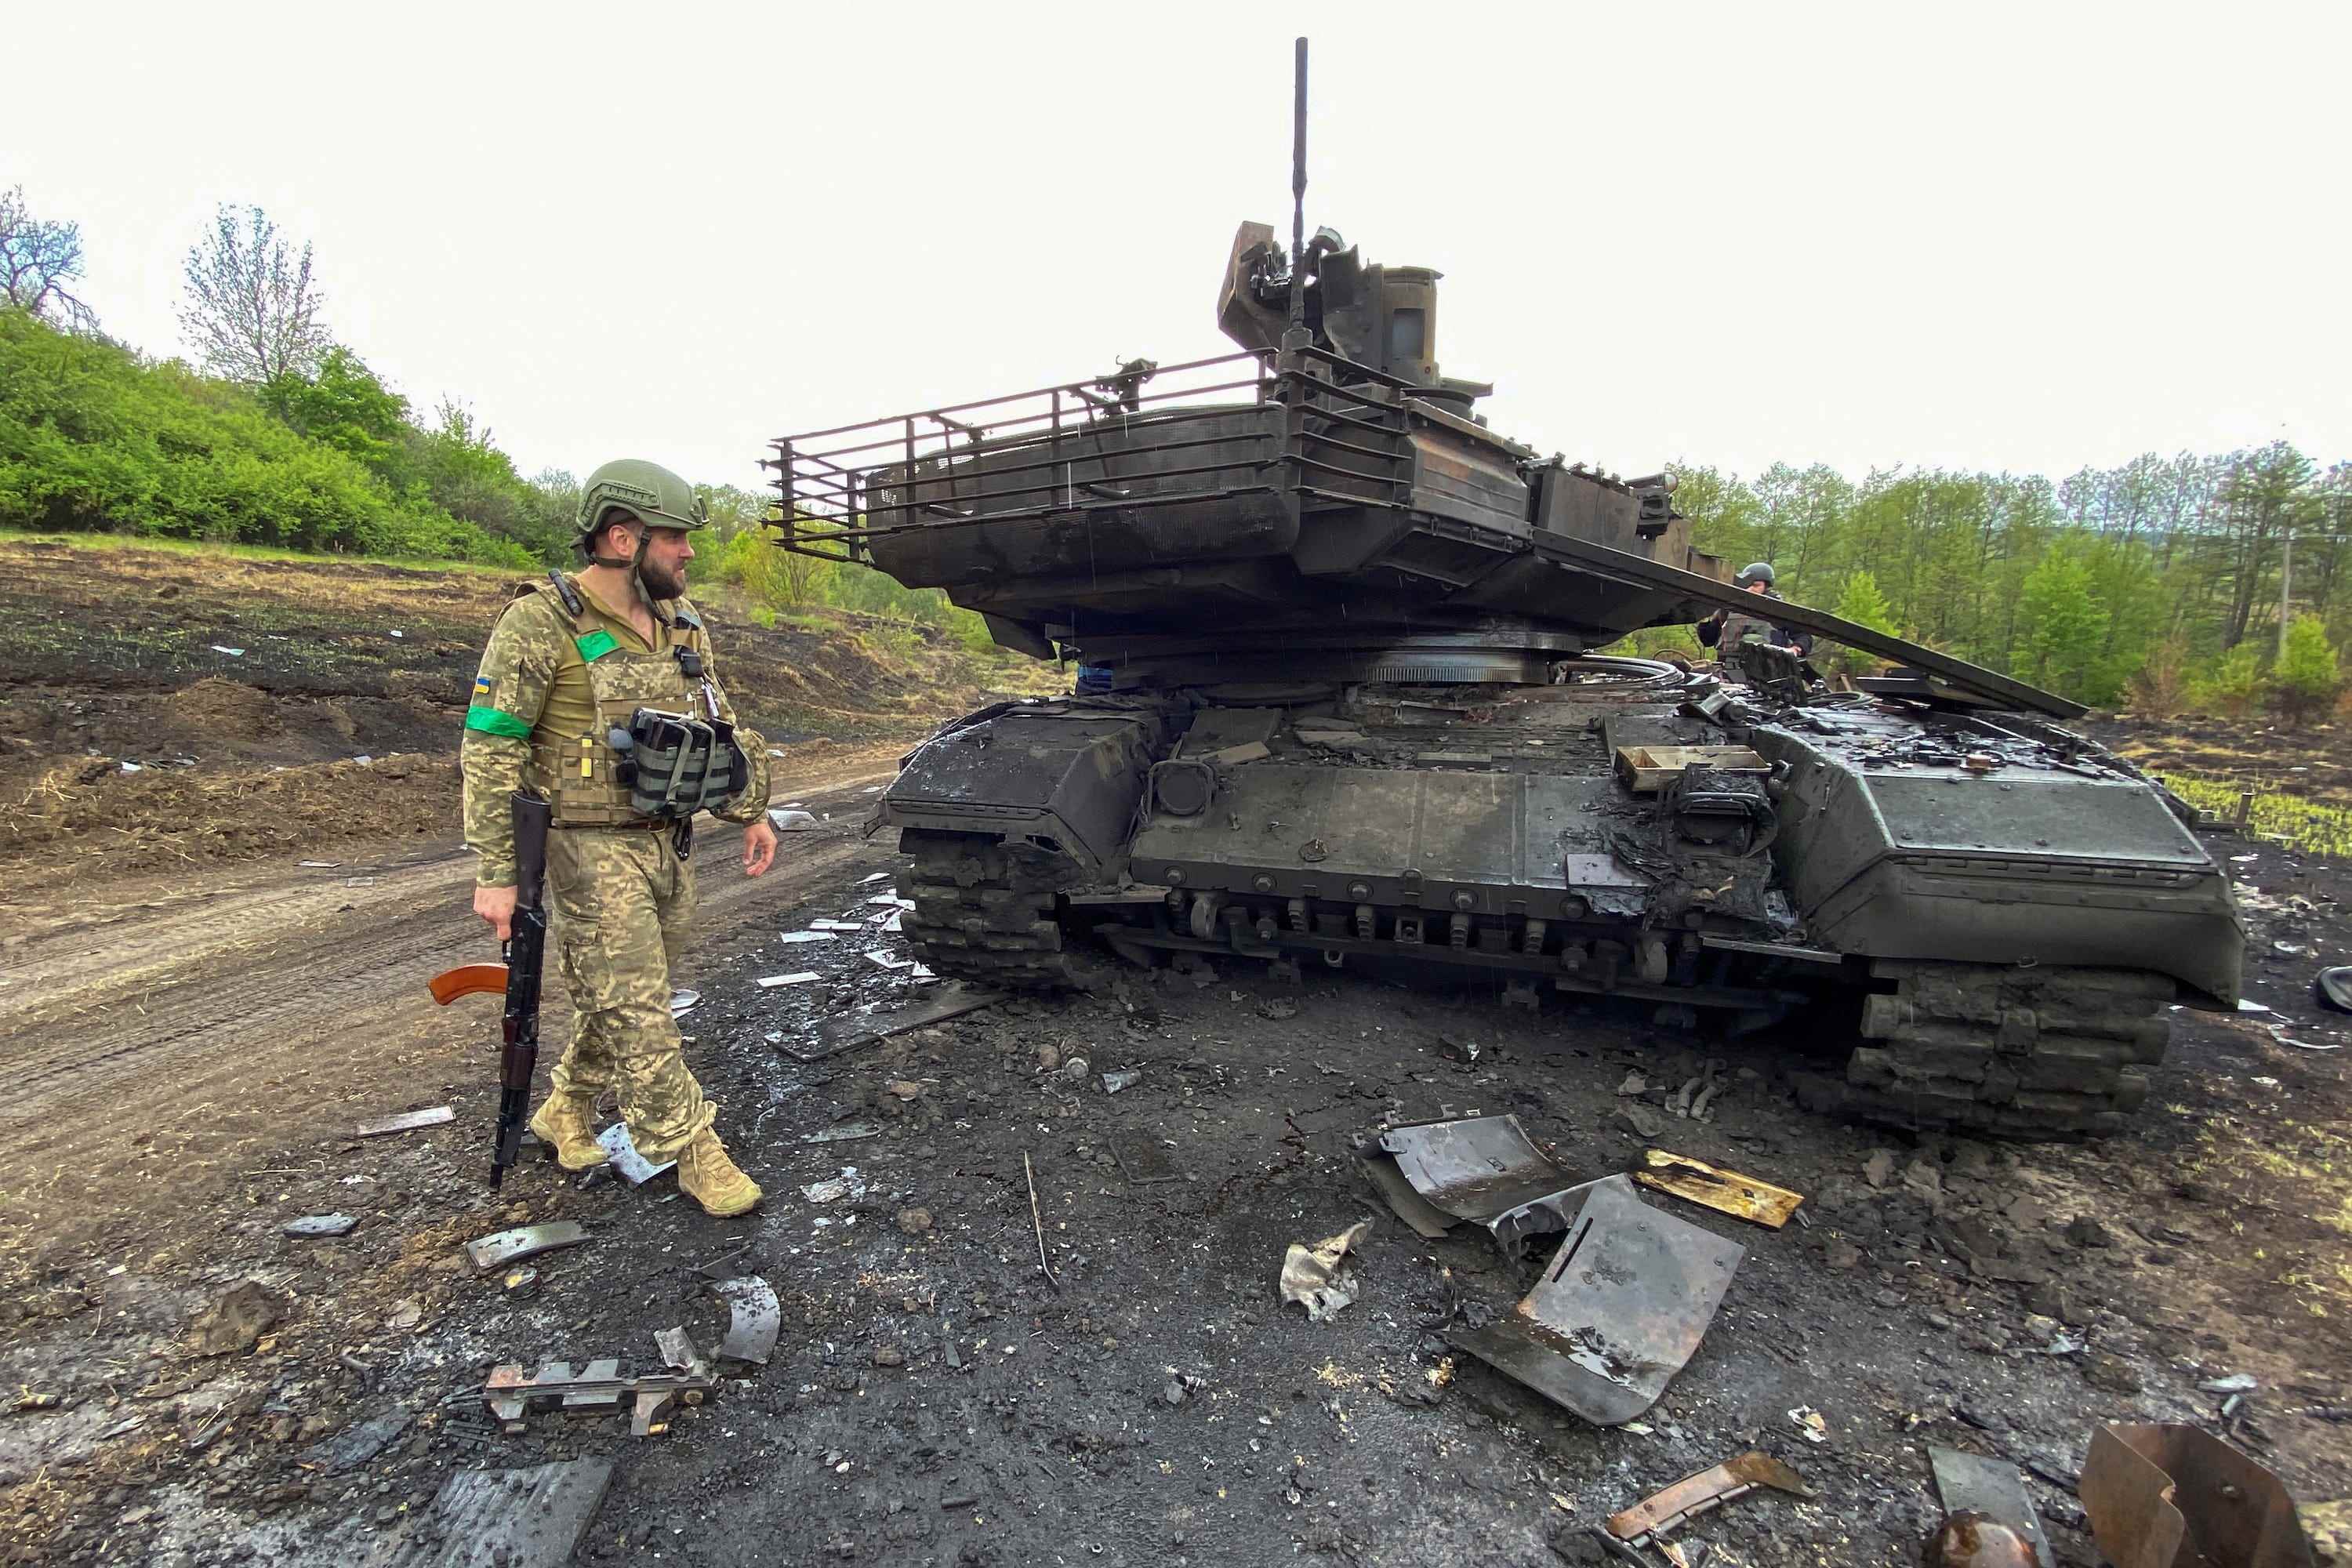 Der ukrainische Soldat geht neben einem zerstörten russischen Kampfpanzer T-90M Proryv, während Russlands Angriff auf die Ukraine weitergeht, in der Nähe des Dorfes Staryi Saltiv in der Region Charkiw, Ukraine, 9. Mai 2022. Bild aufgenommen am 9. Mai 2022. REUTERS/Vitalii Hnidyi